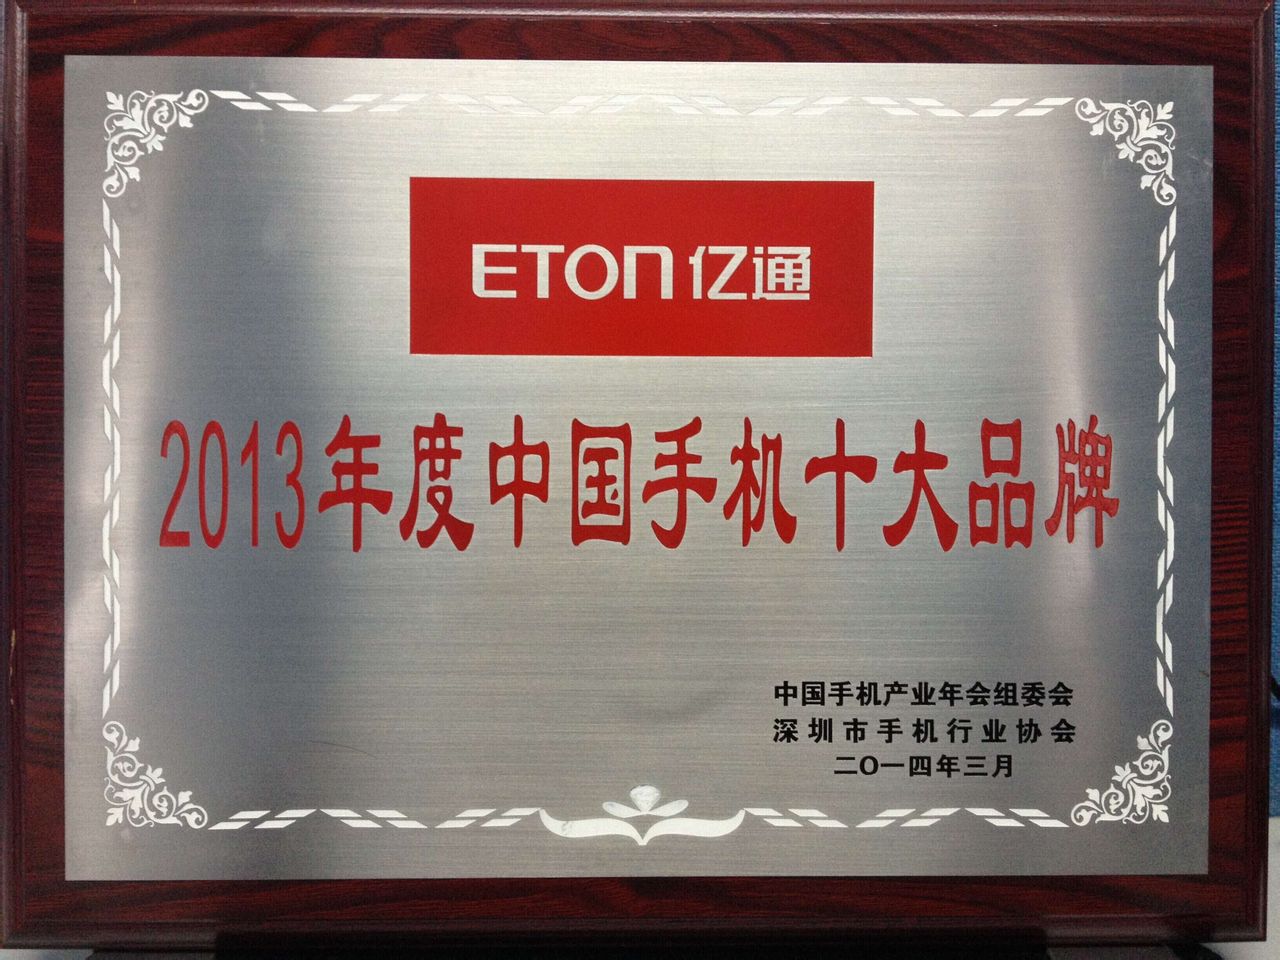 億通榮獲2013年度中國手機十大品牌